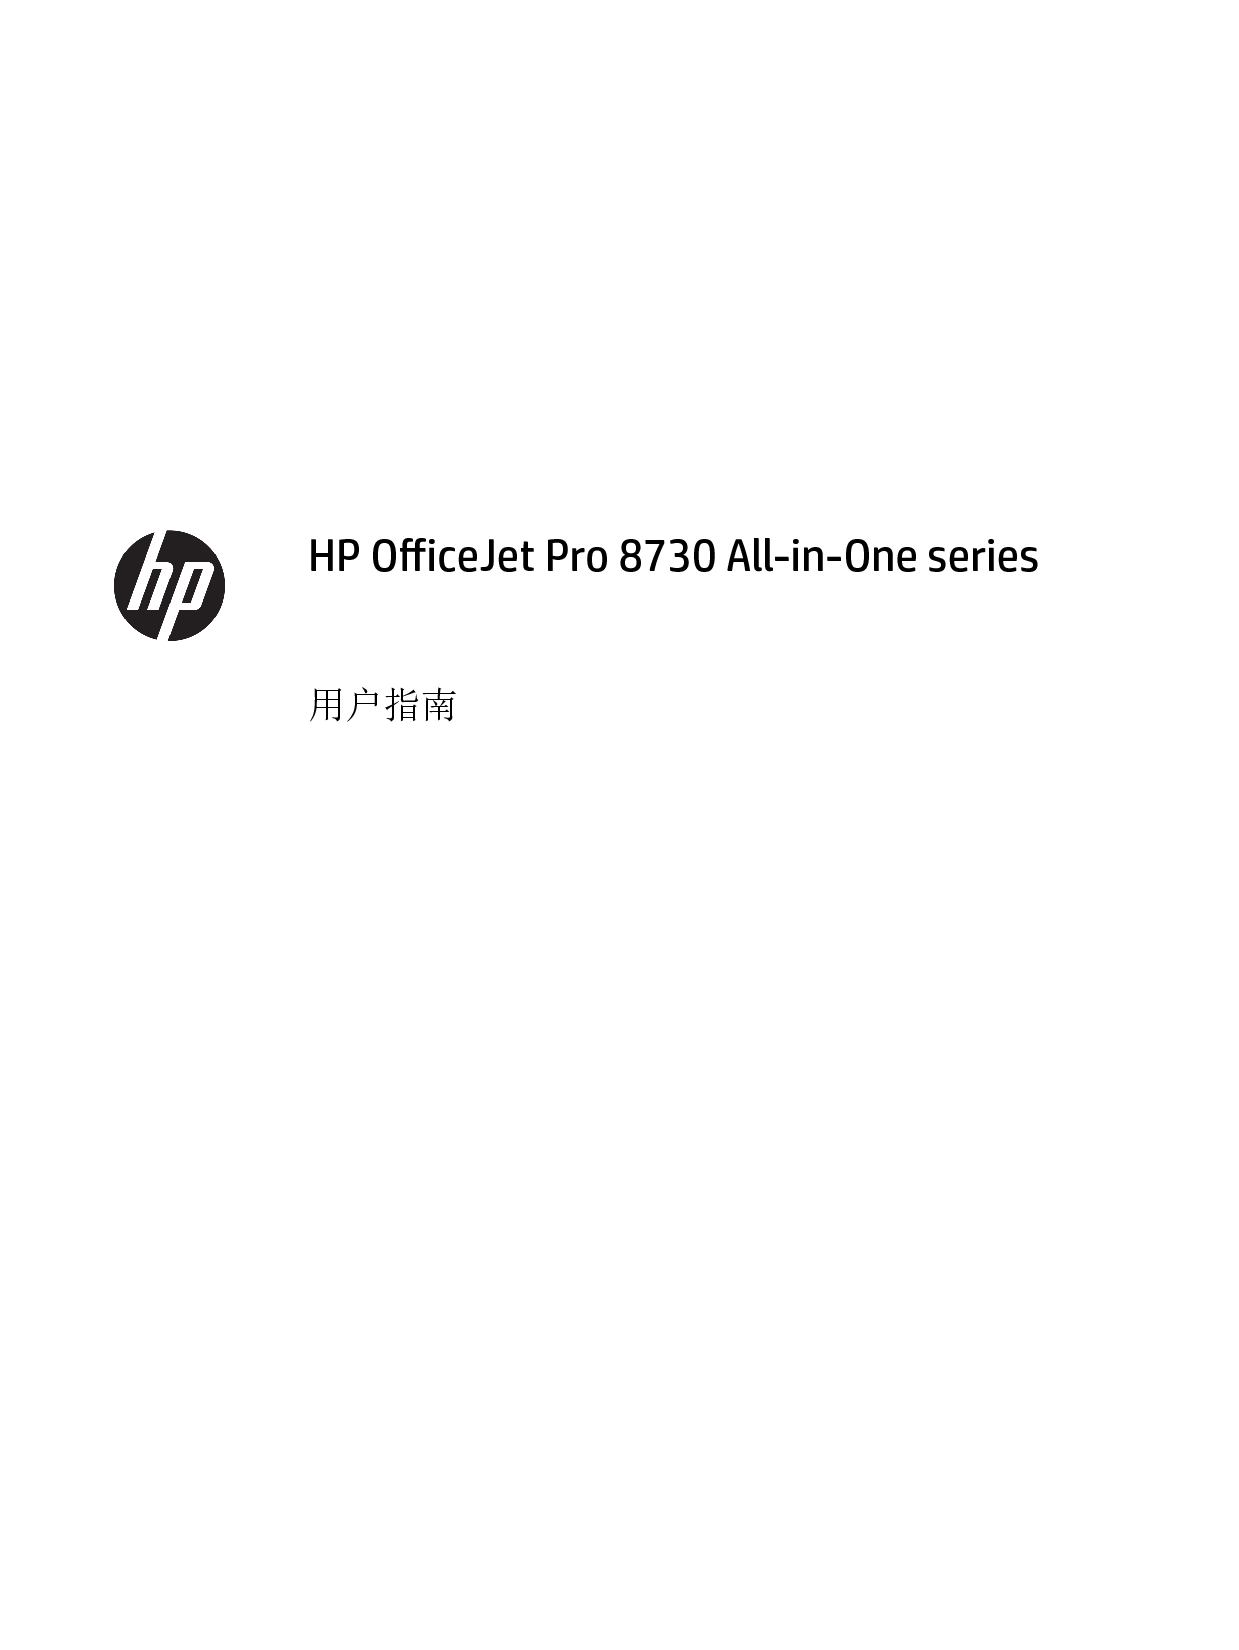 惠普 HP OfficeJet Pro 8730 用户指南 第1页